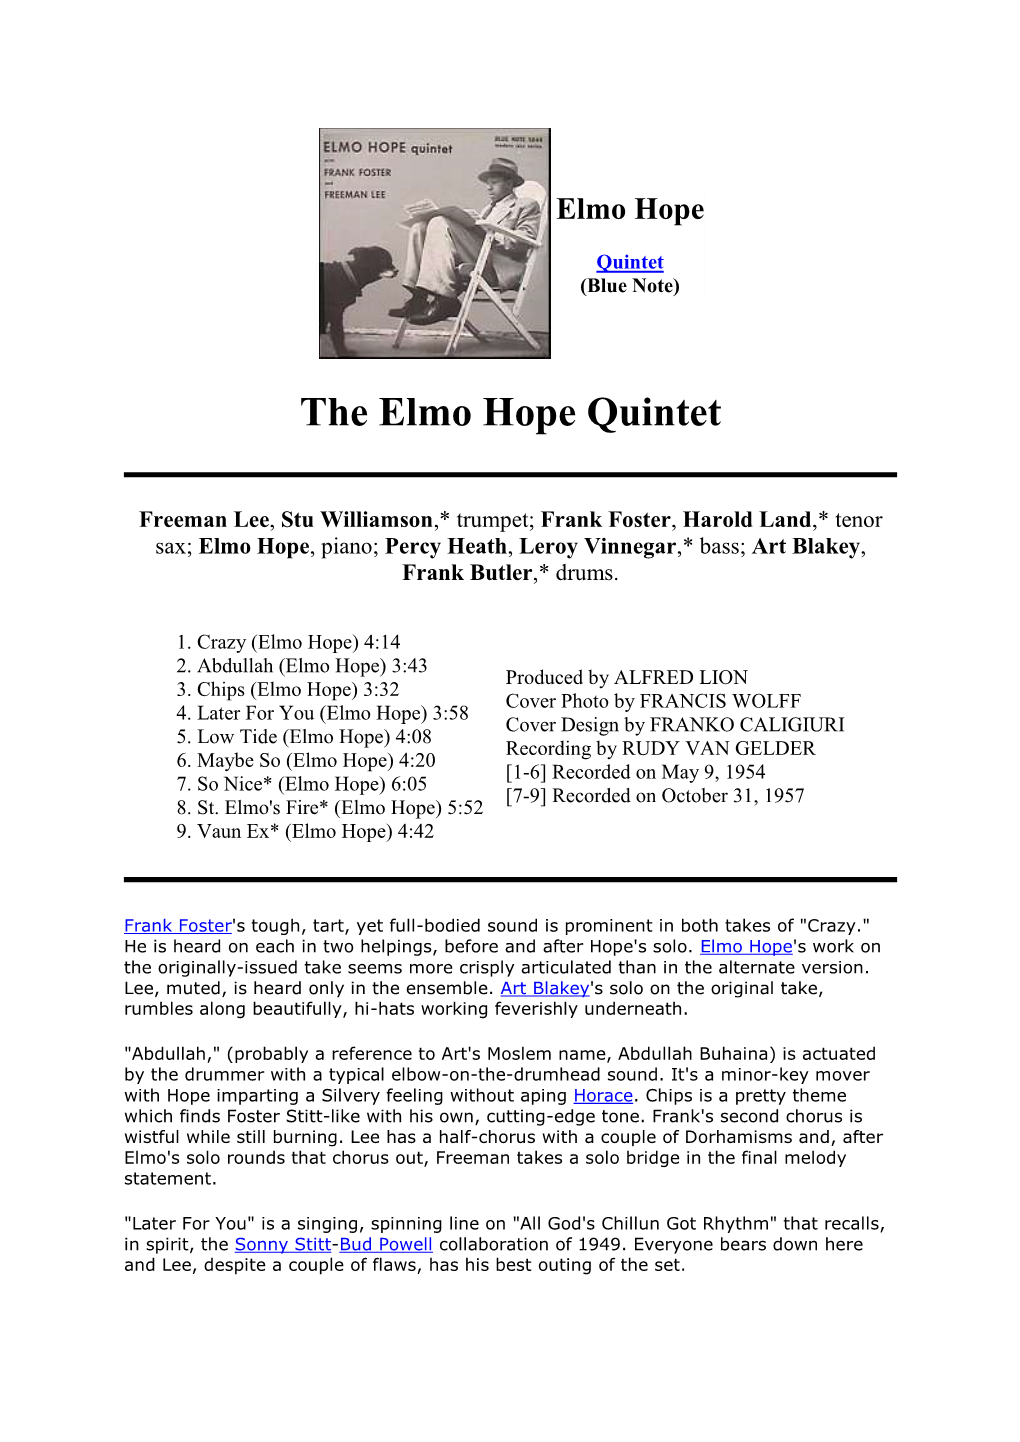 The Elmo Hope Quintet